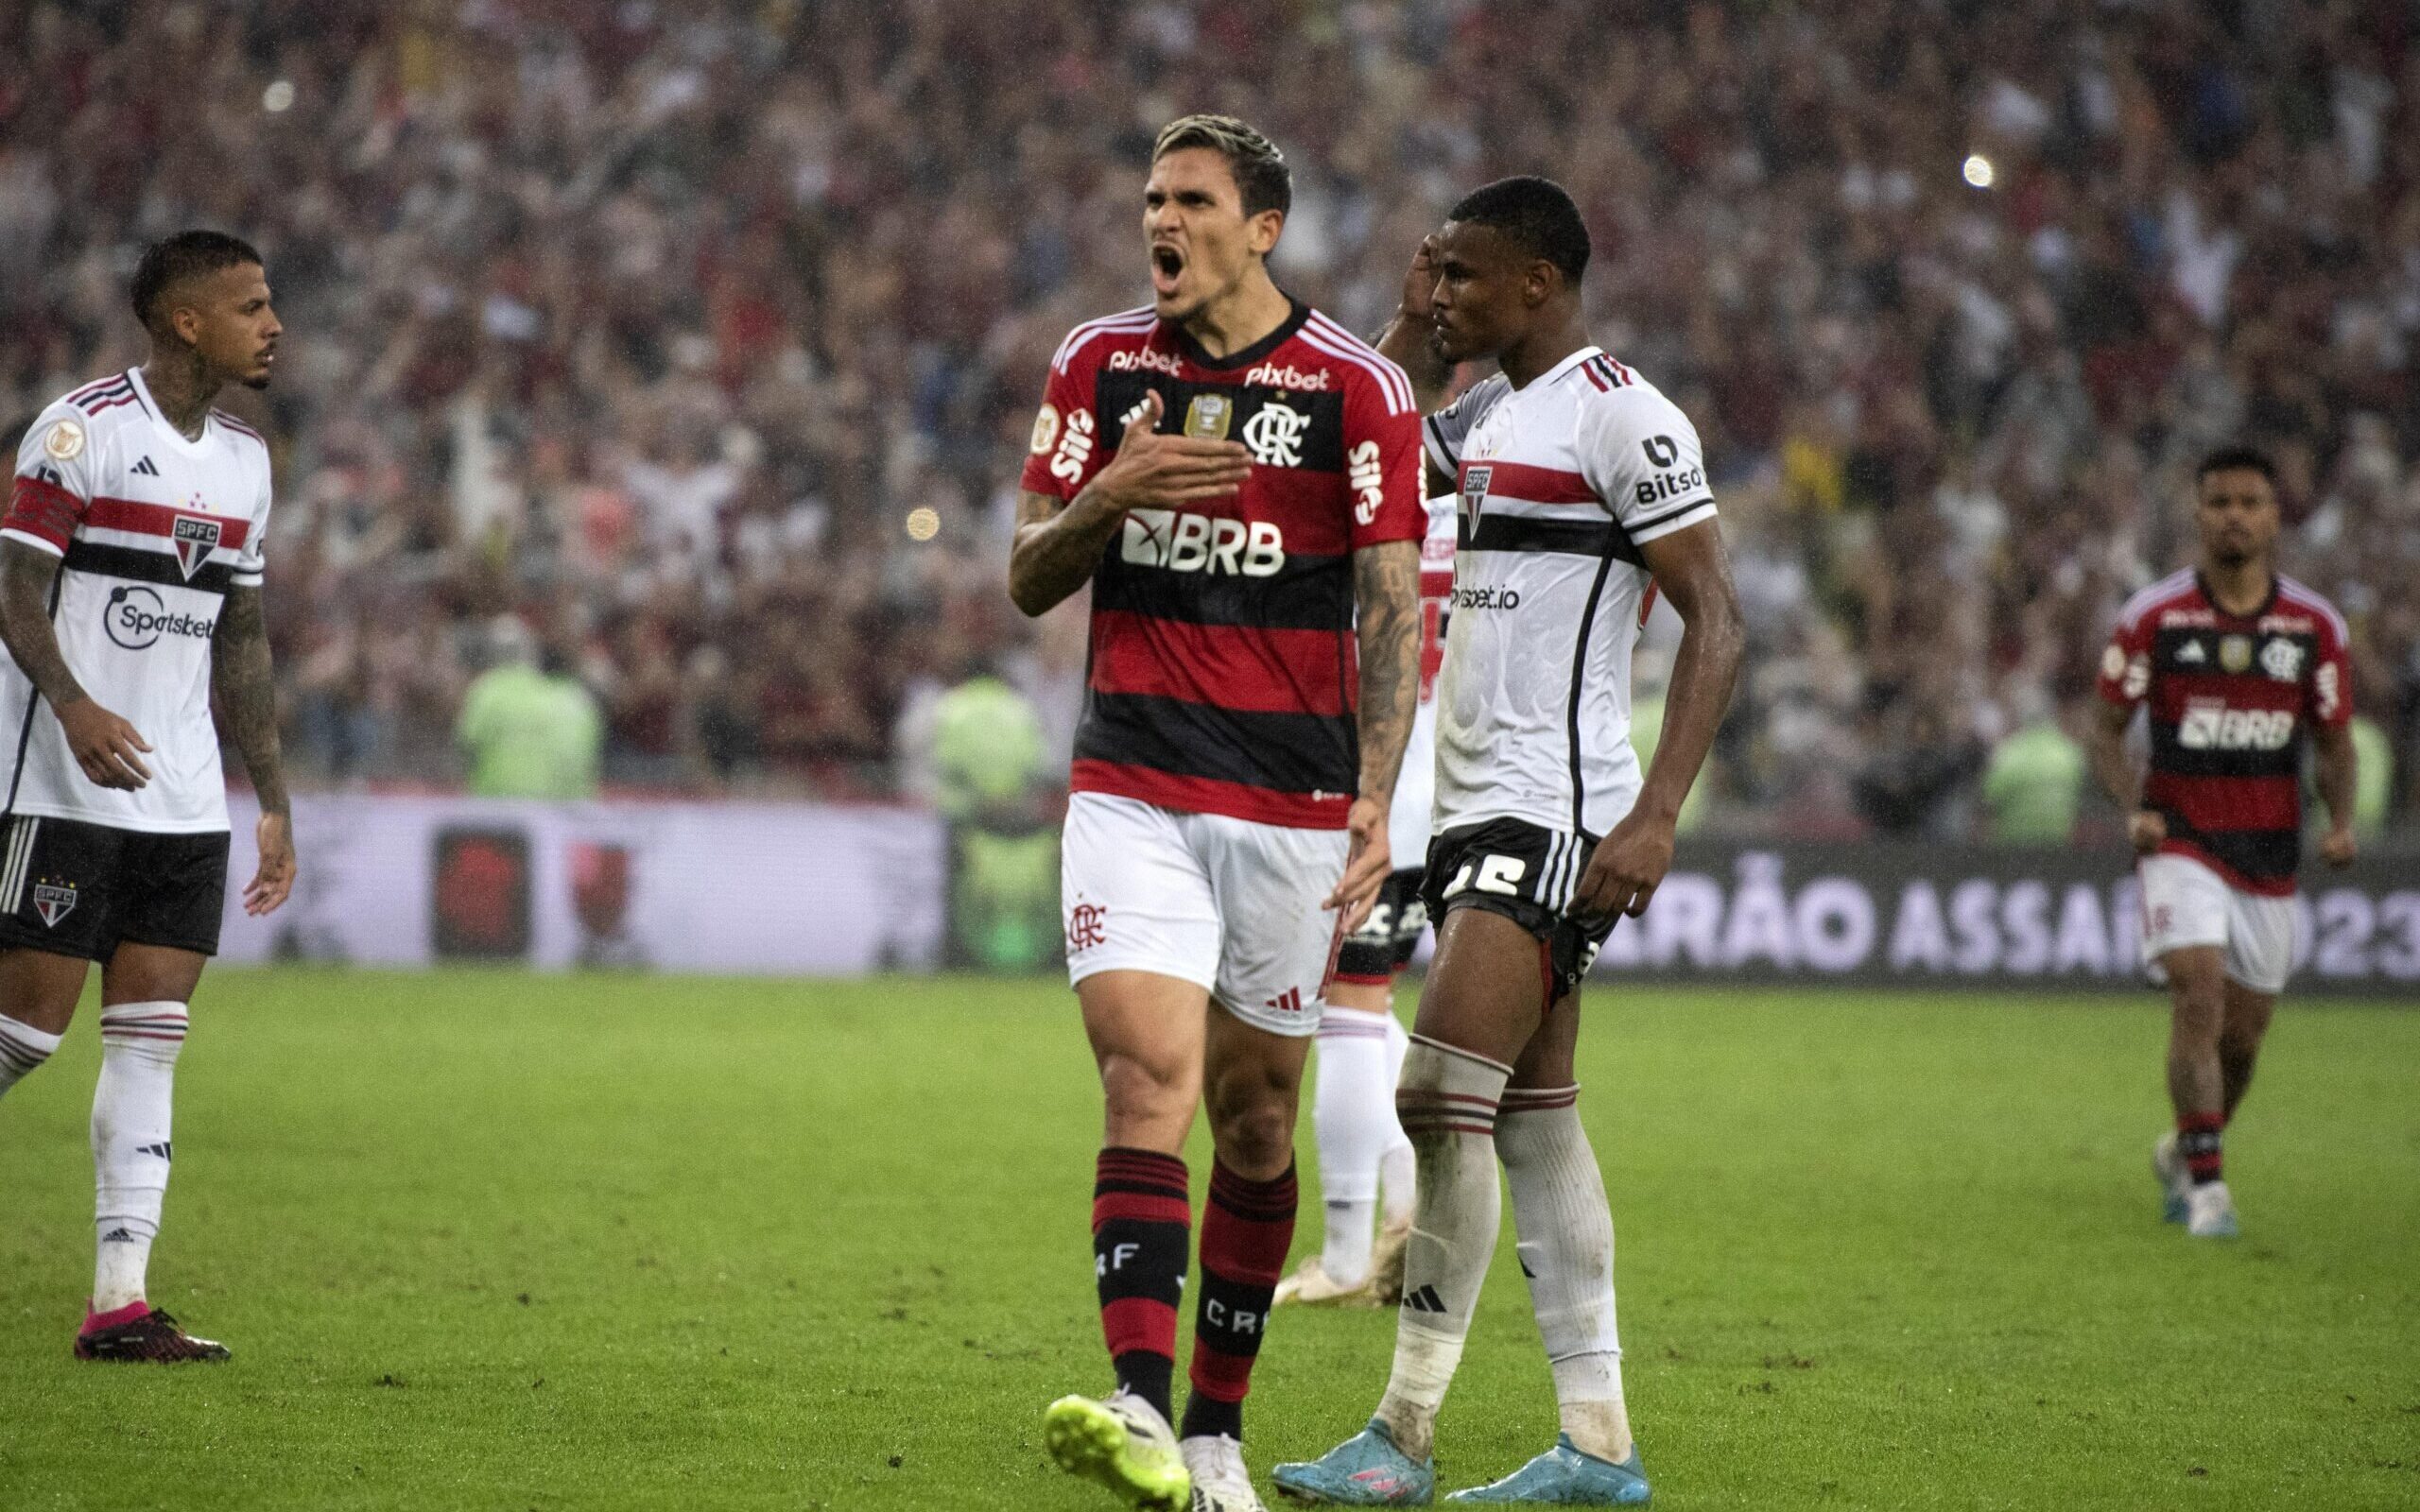 Flamengo x São Paulo: quem tem o melhor time? - Lance!